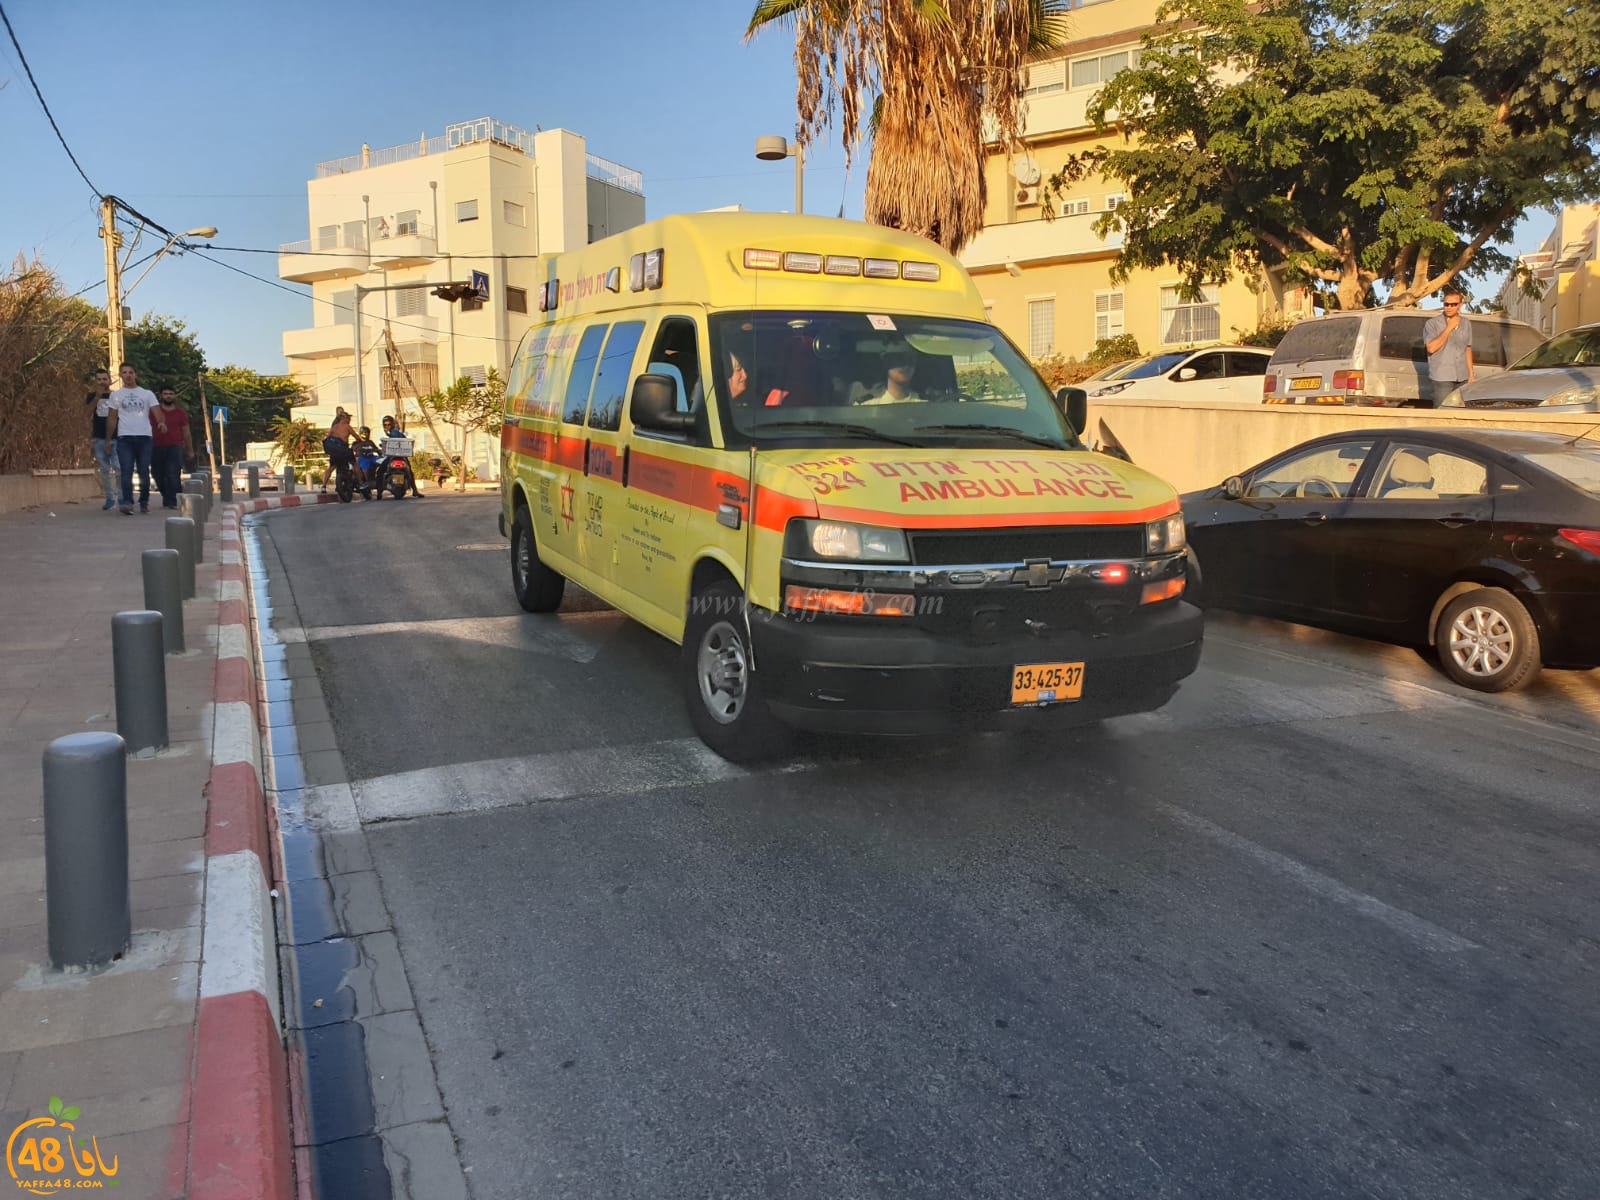 يافا: رغم حواجز الشرطة - أكثر من 10 مصابين خلال اسبوع بحوادث اطلاق نار وطعن بيافا واللد